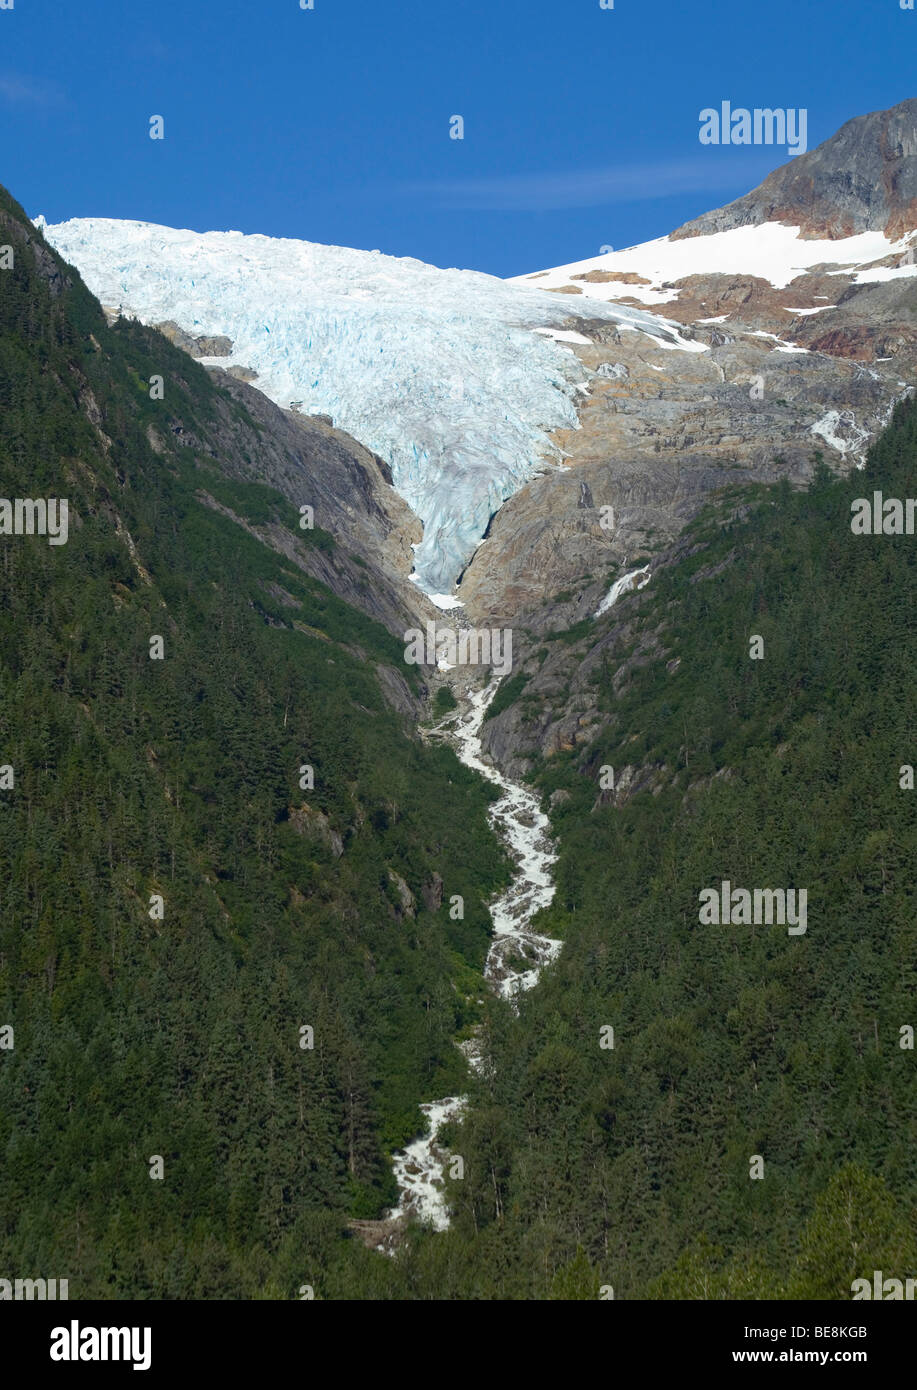 Irene ghiacciaio, nei pressi di Finnegan punto, Pacific Northwest Coastal Rain Forest, storico Chilkoot Trail, Chilkoot Pass, Alaska, STATI UNITI D'AMERICA Foto Stock